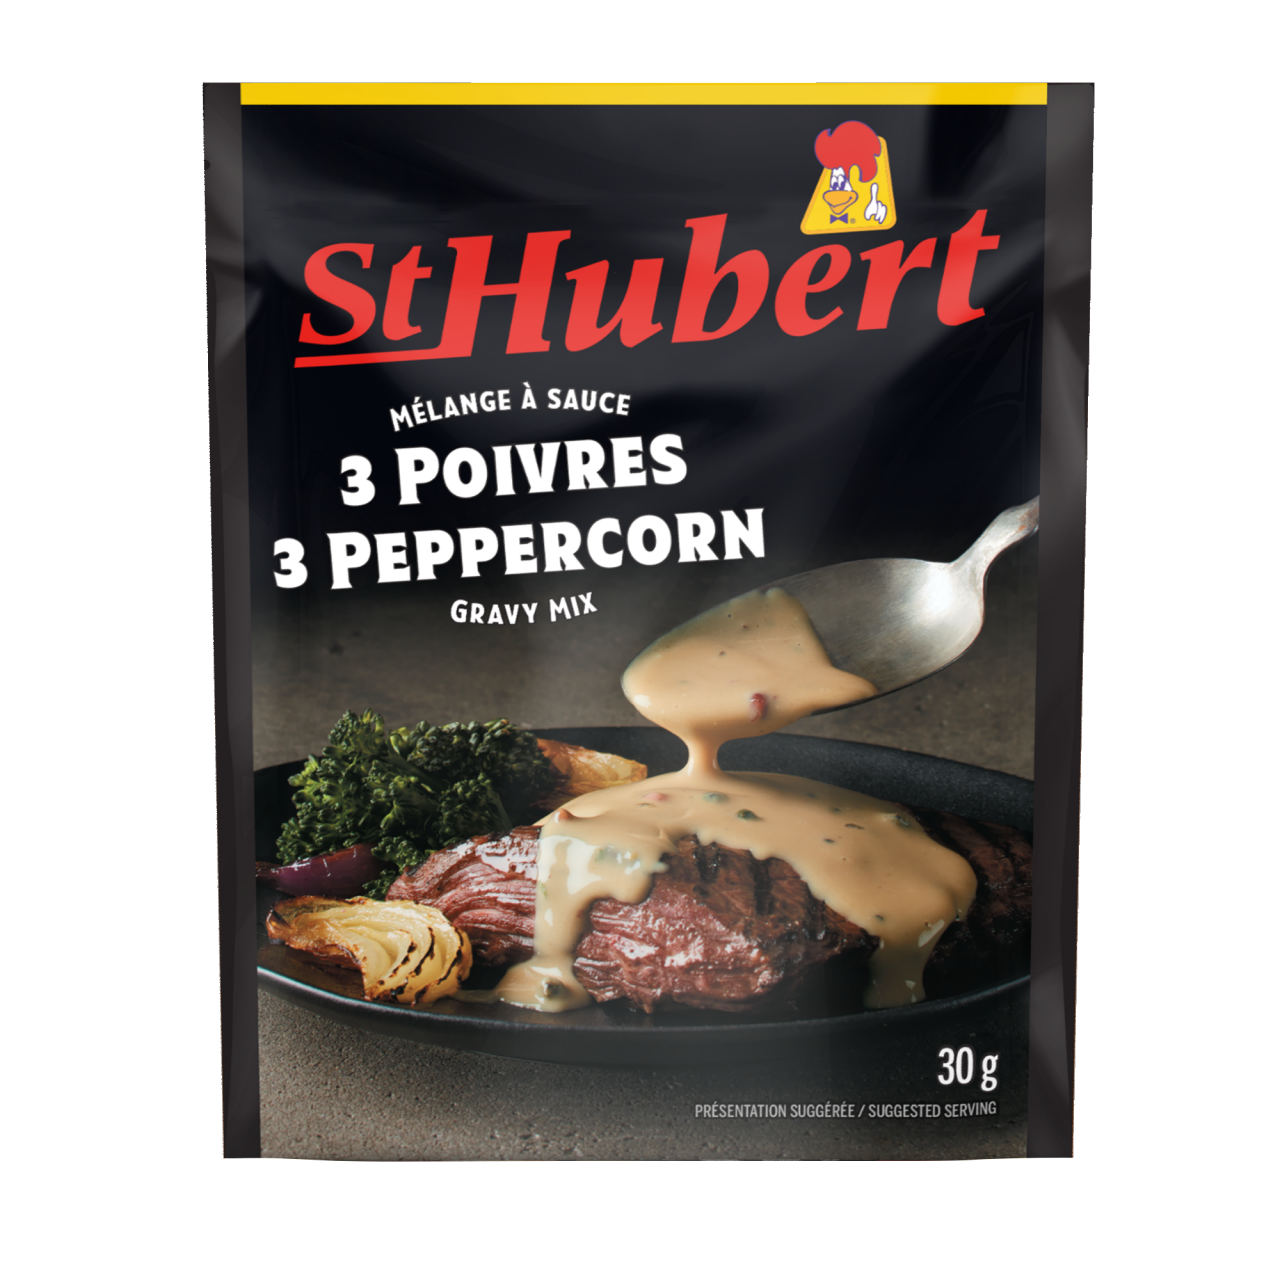 St-Hubert 3 Peppercorn Gravy